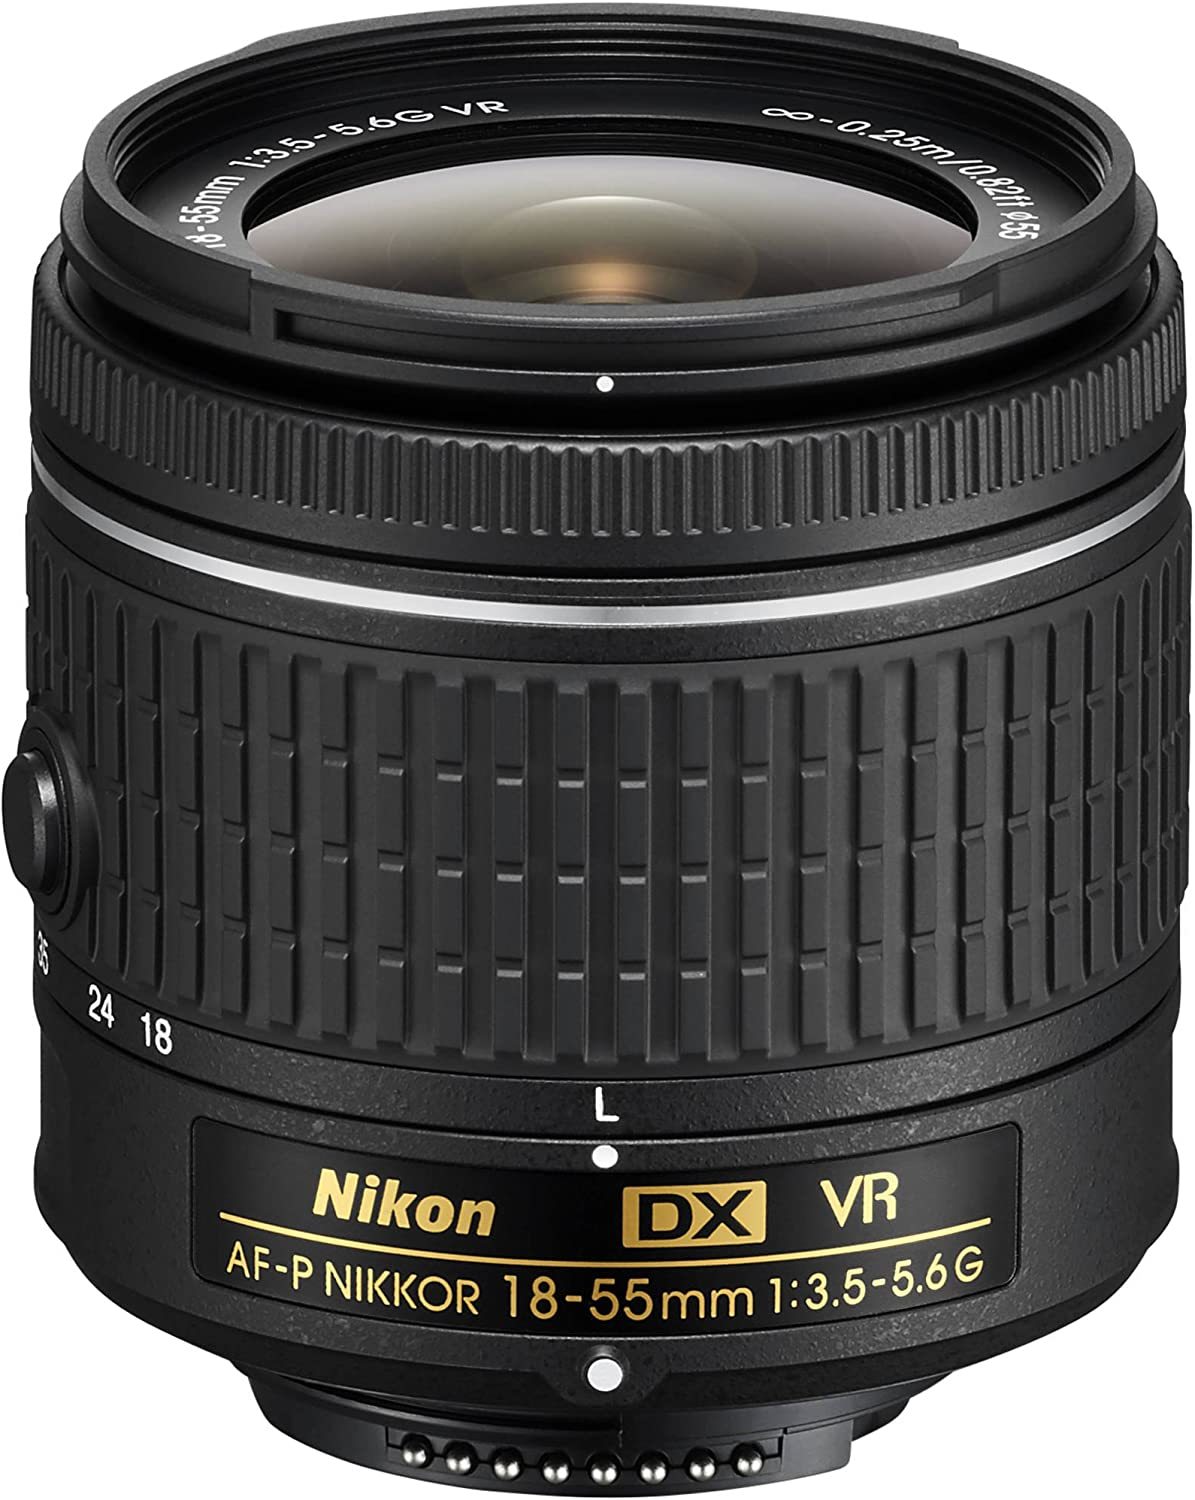 Primary image for Nikon 18-55Mm F/3.5-5.6G Vr Af-P Dx Zoom-Nikkor Lens - (Renewed)